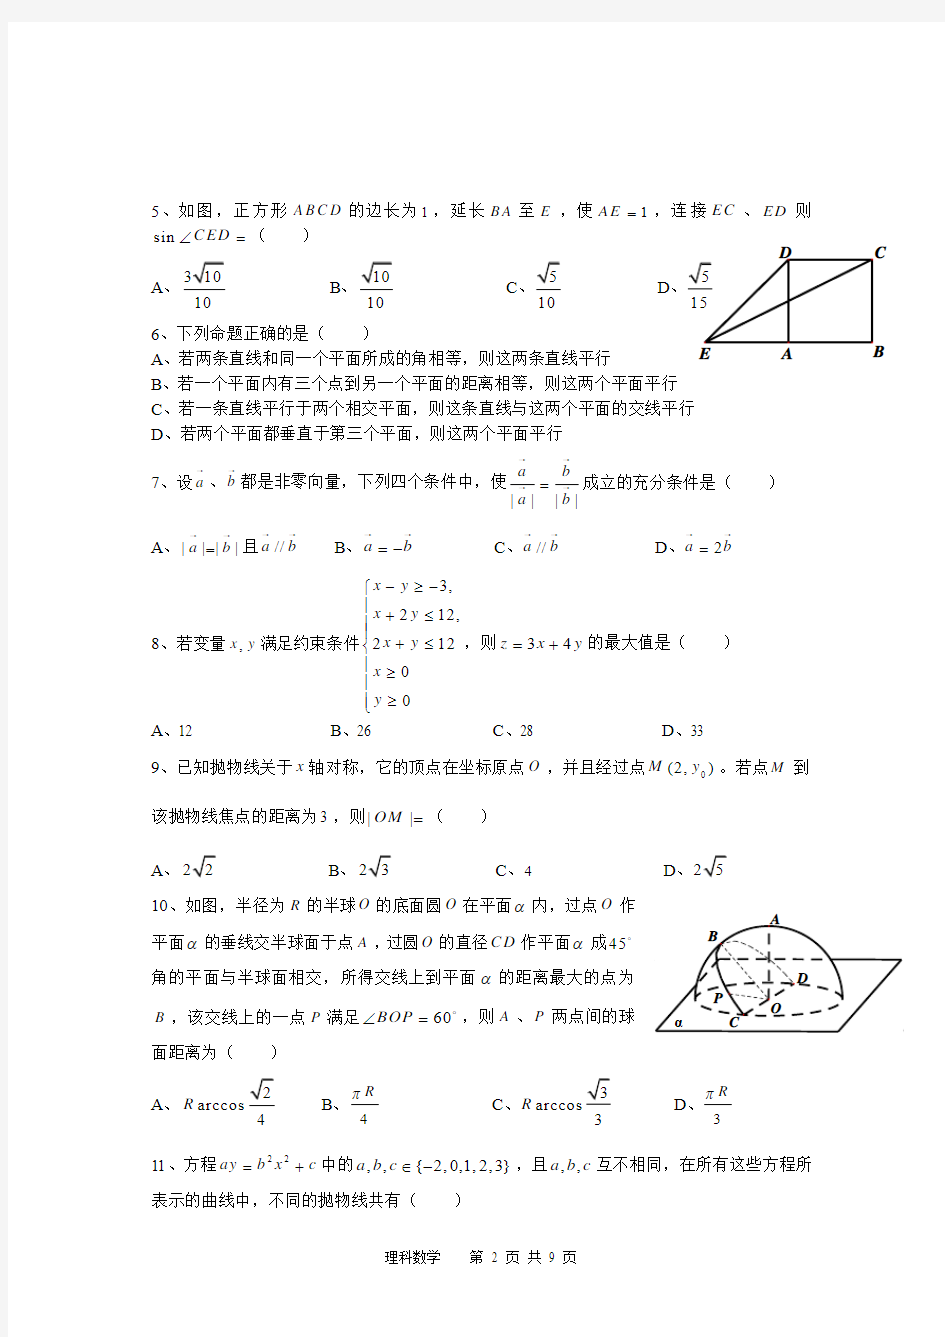 2012年高考真题——数学文(四川卷)含答案